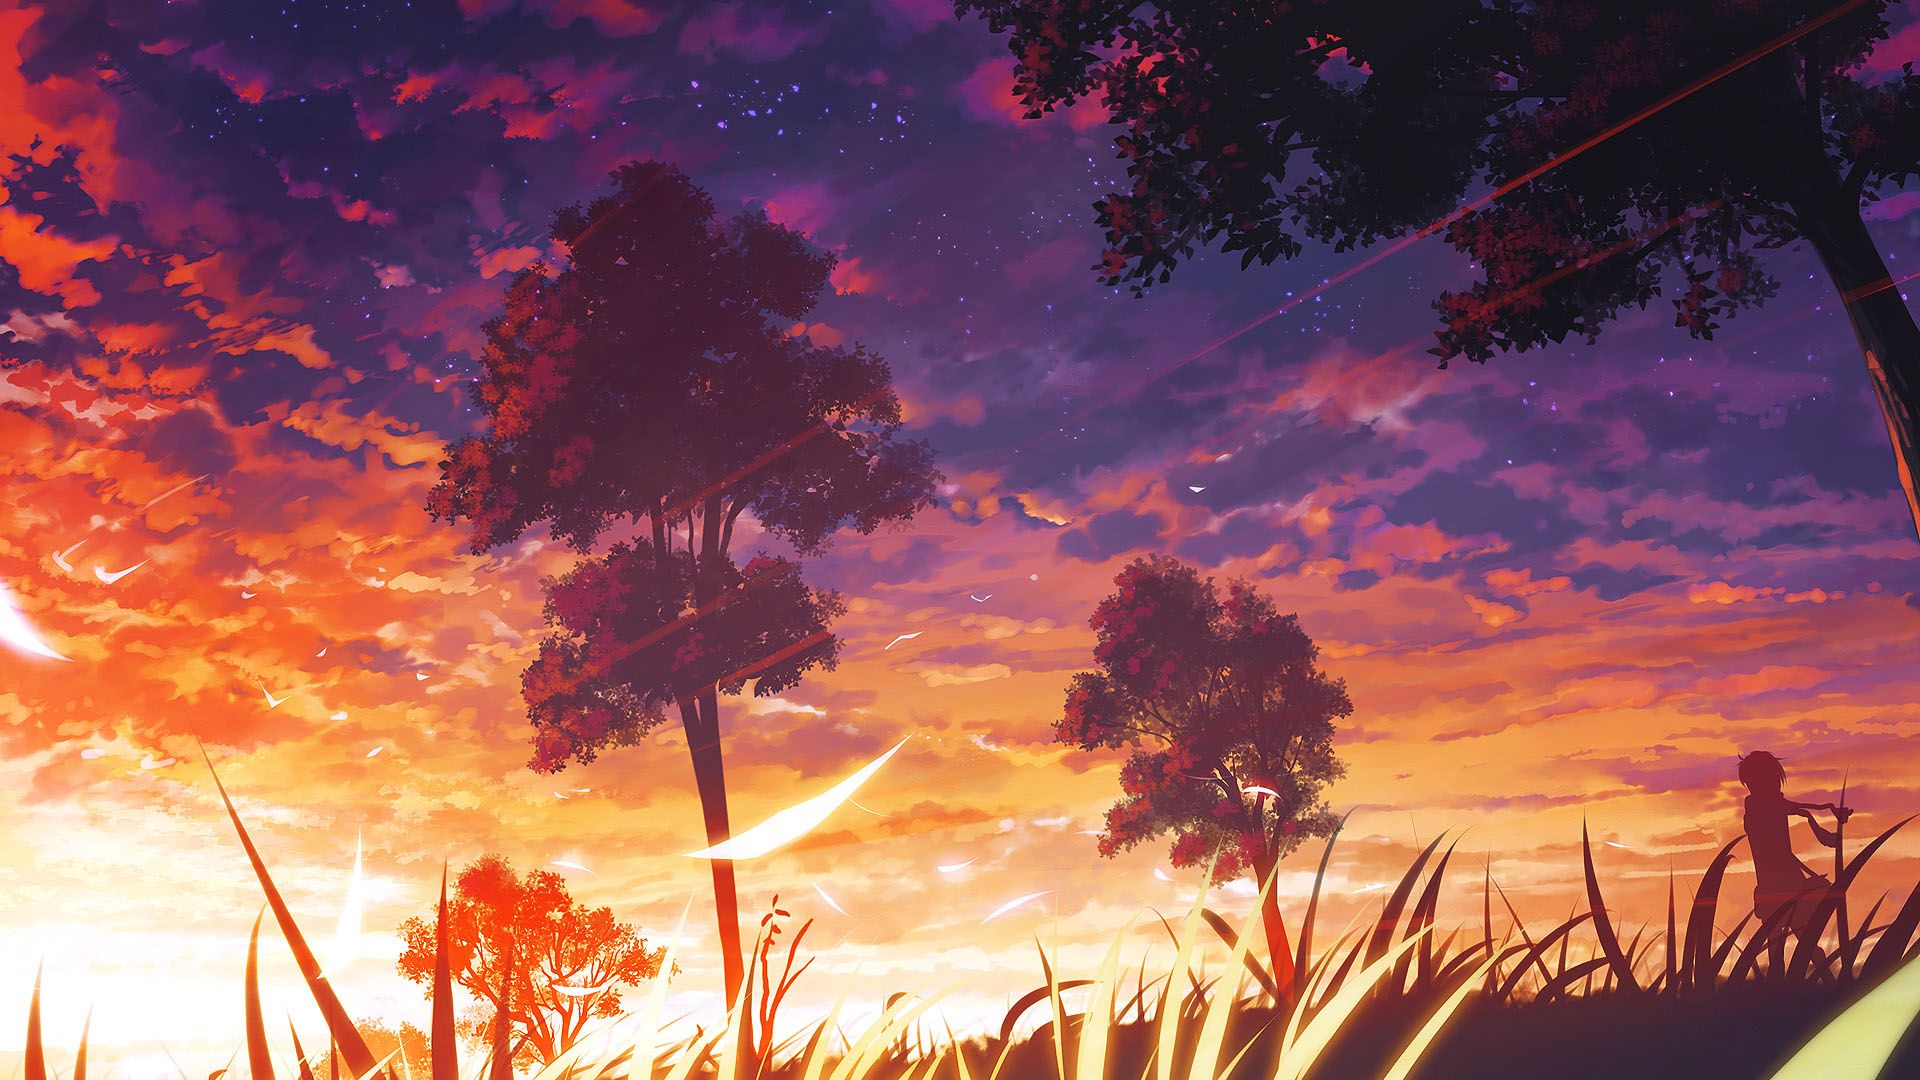 Hình nền Nền Cảnh Anime đẹp Và Tươi Nền, Anime, Cảnh Phim Hoạt Hình, Xinh  đẹp Background Vector để tải xuống miễn phí - Pngtree